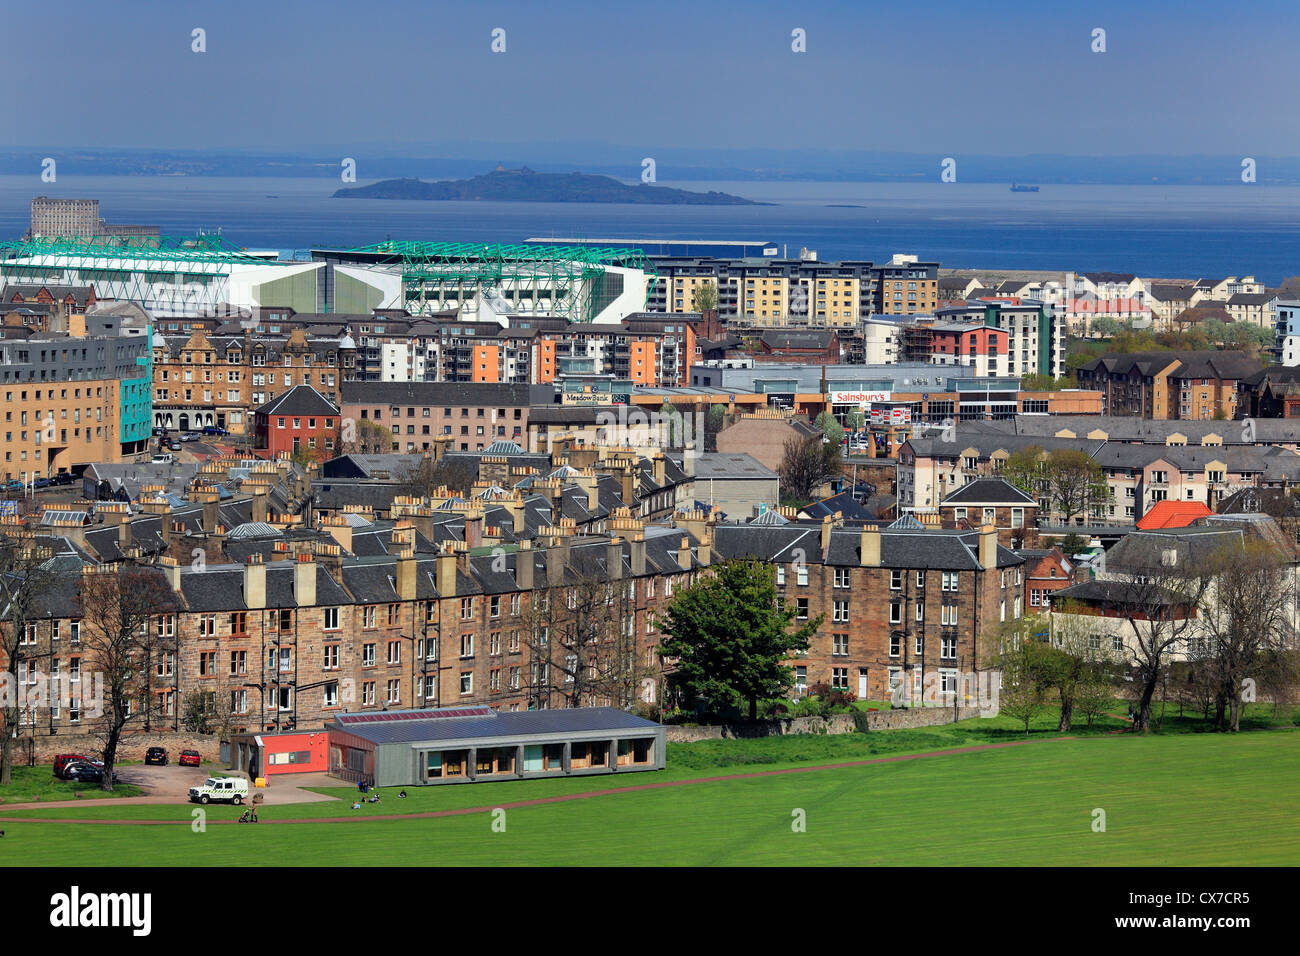 Nueva ciudad, Firth of Forth, Edimburgo, Escocia, Reino Unido Foto de stock